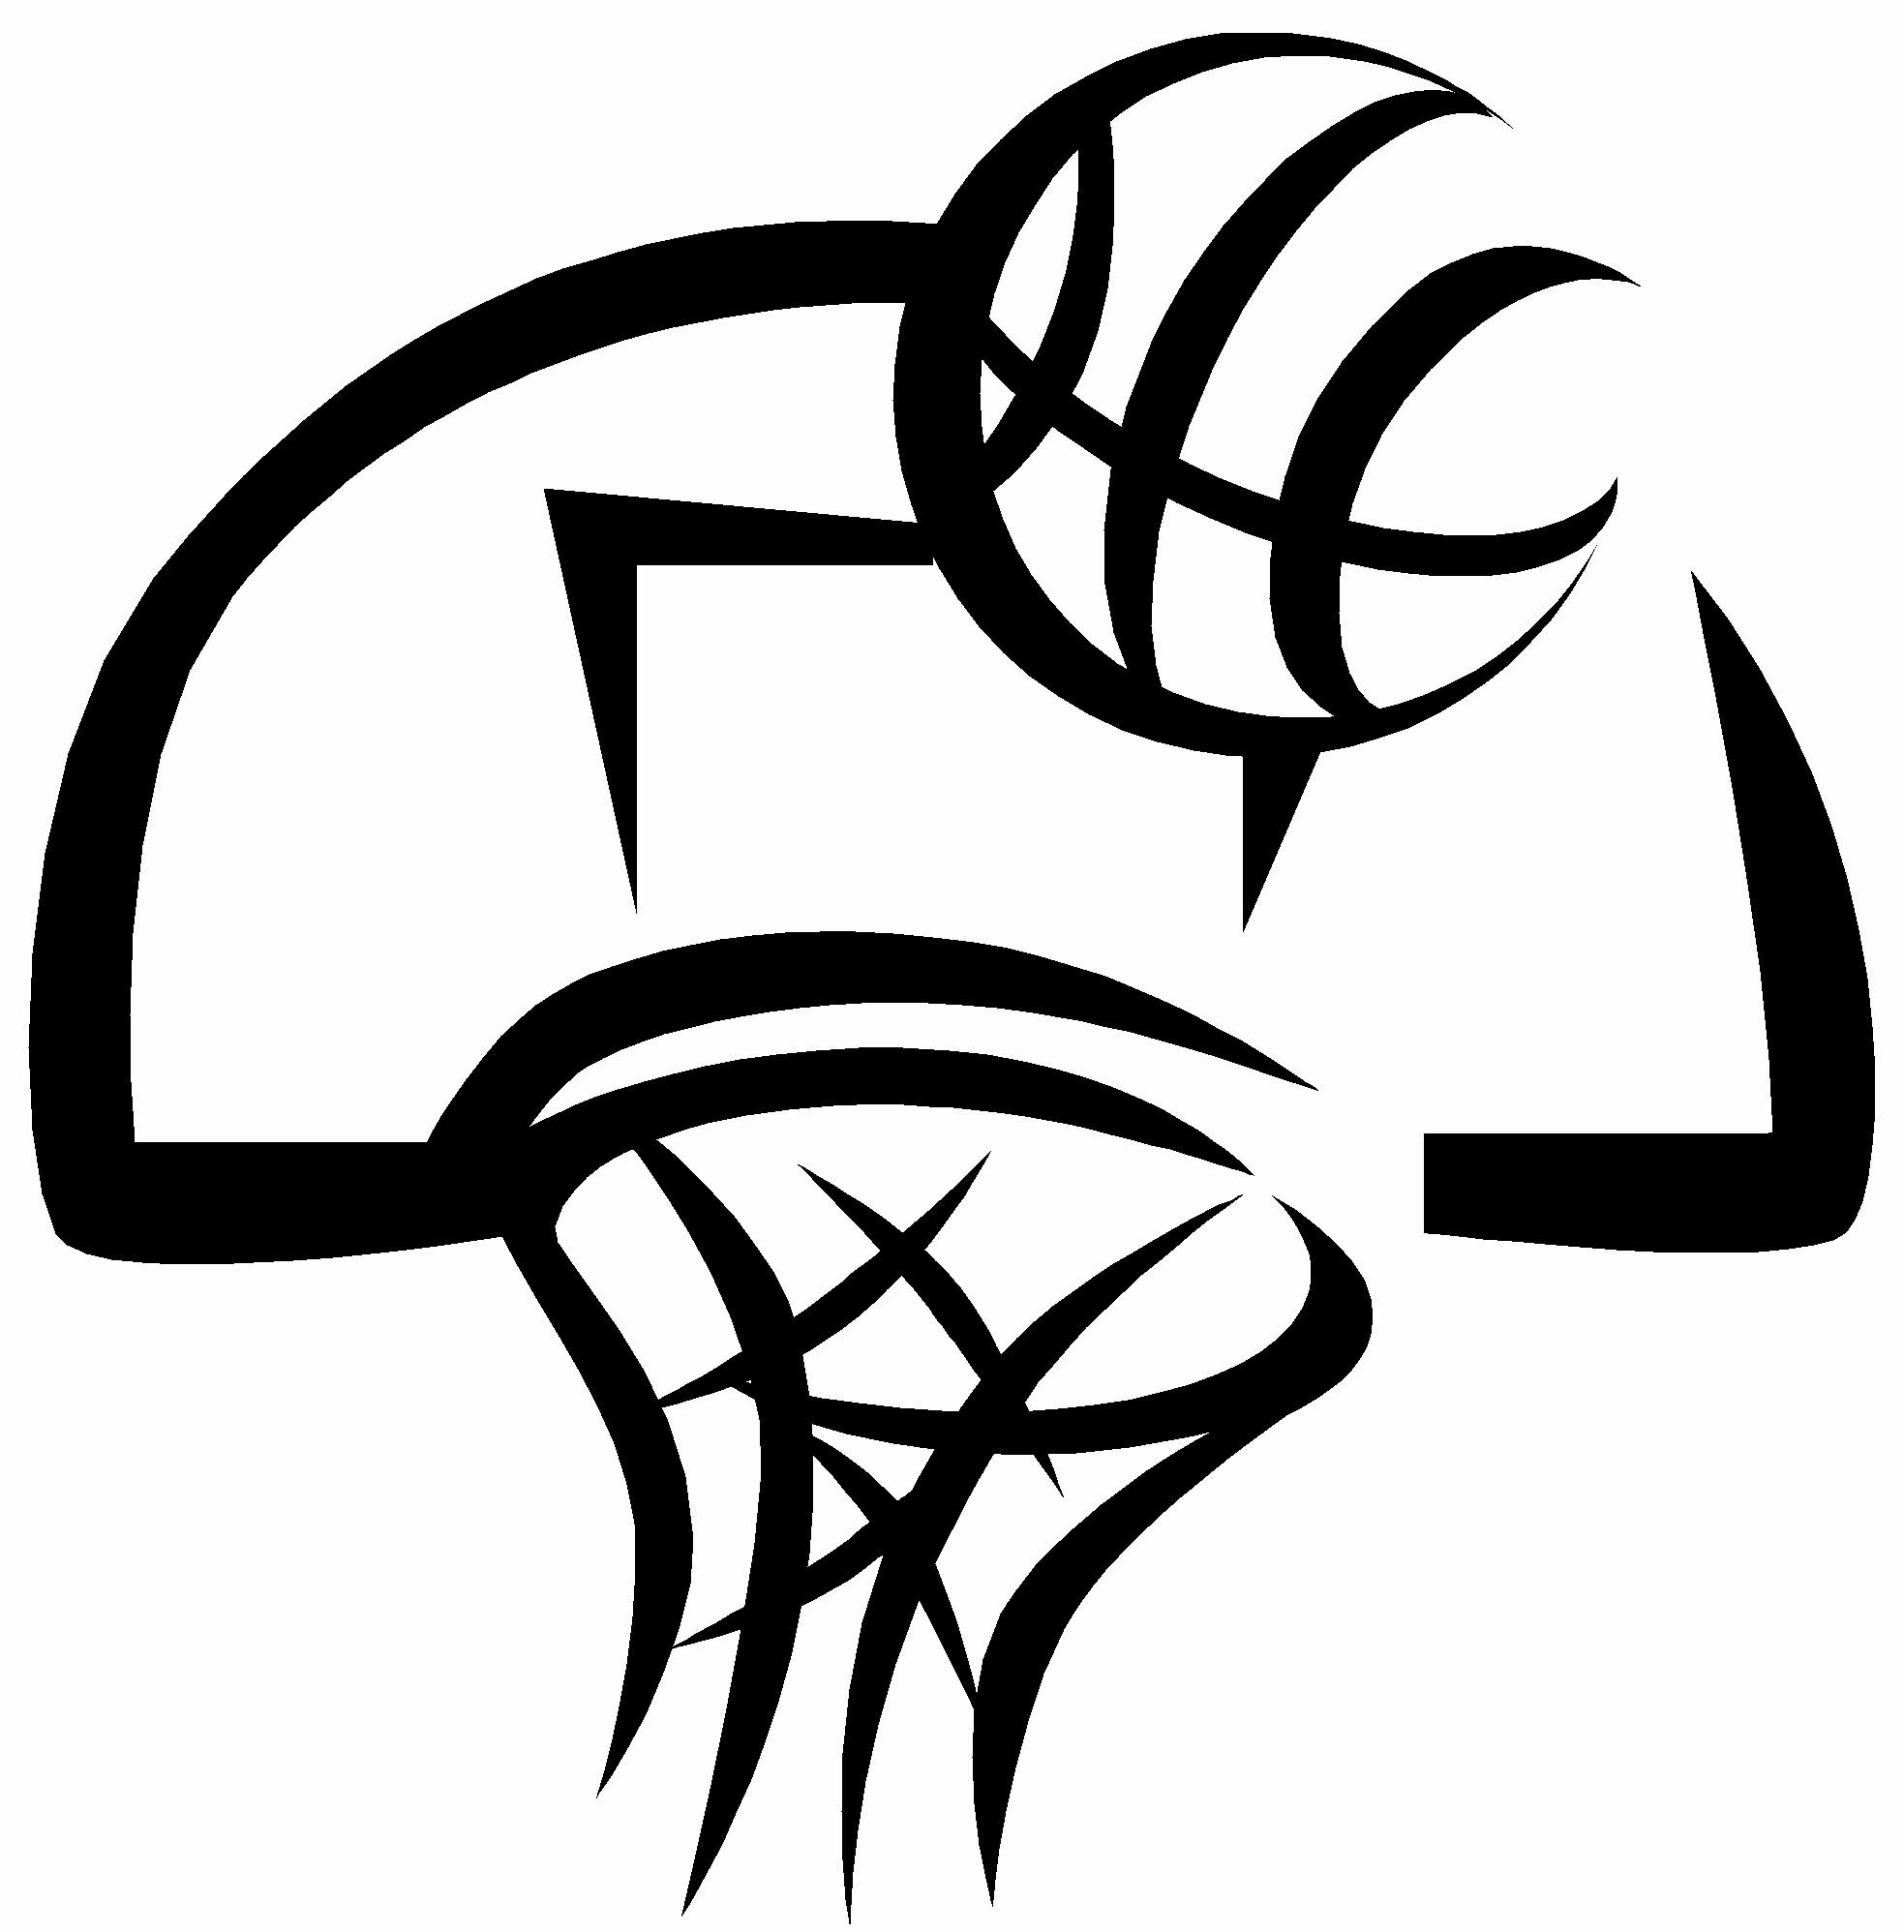 Basketball Images Clip Art Black White Wallpapers Hd - Basketball Court Clipart Black And White - HD Wallpaper 